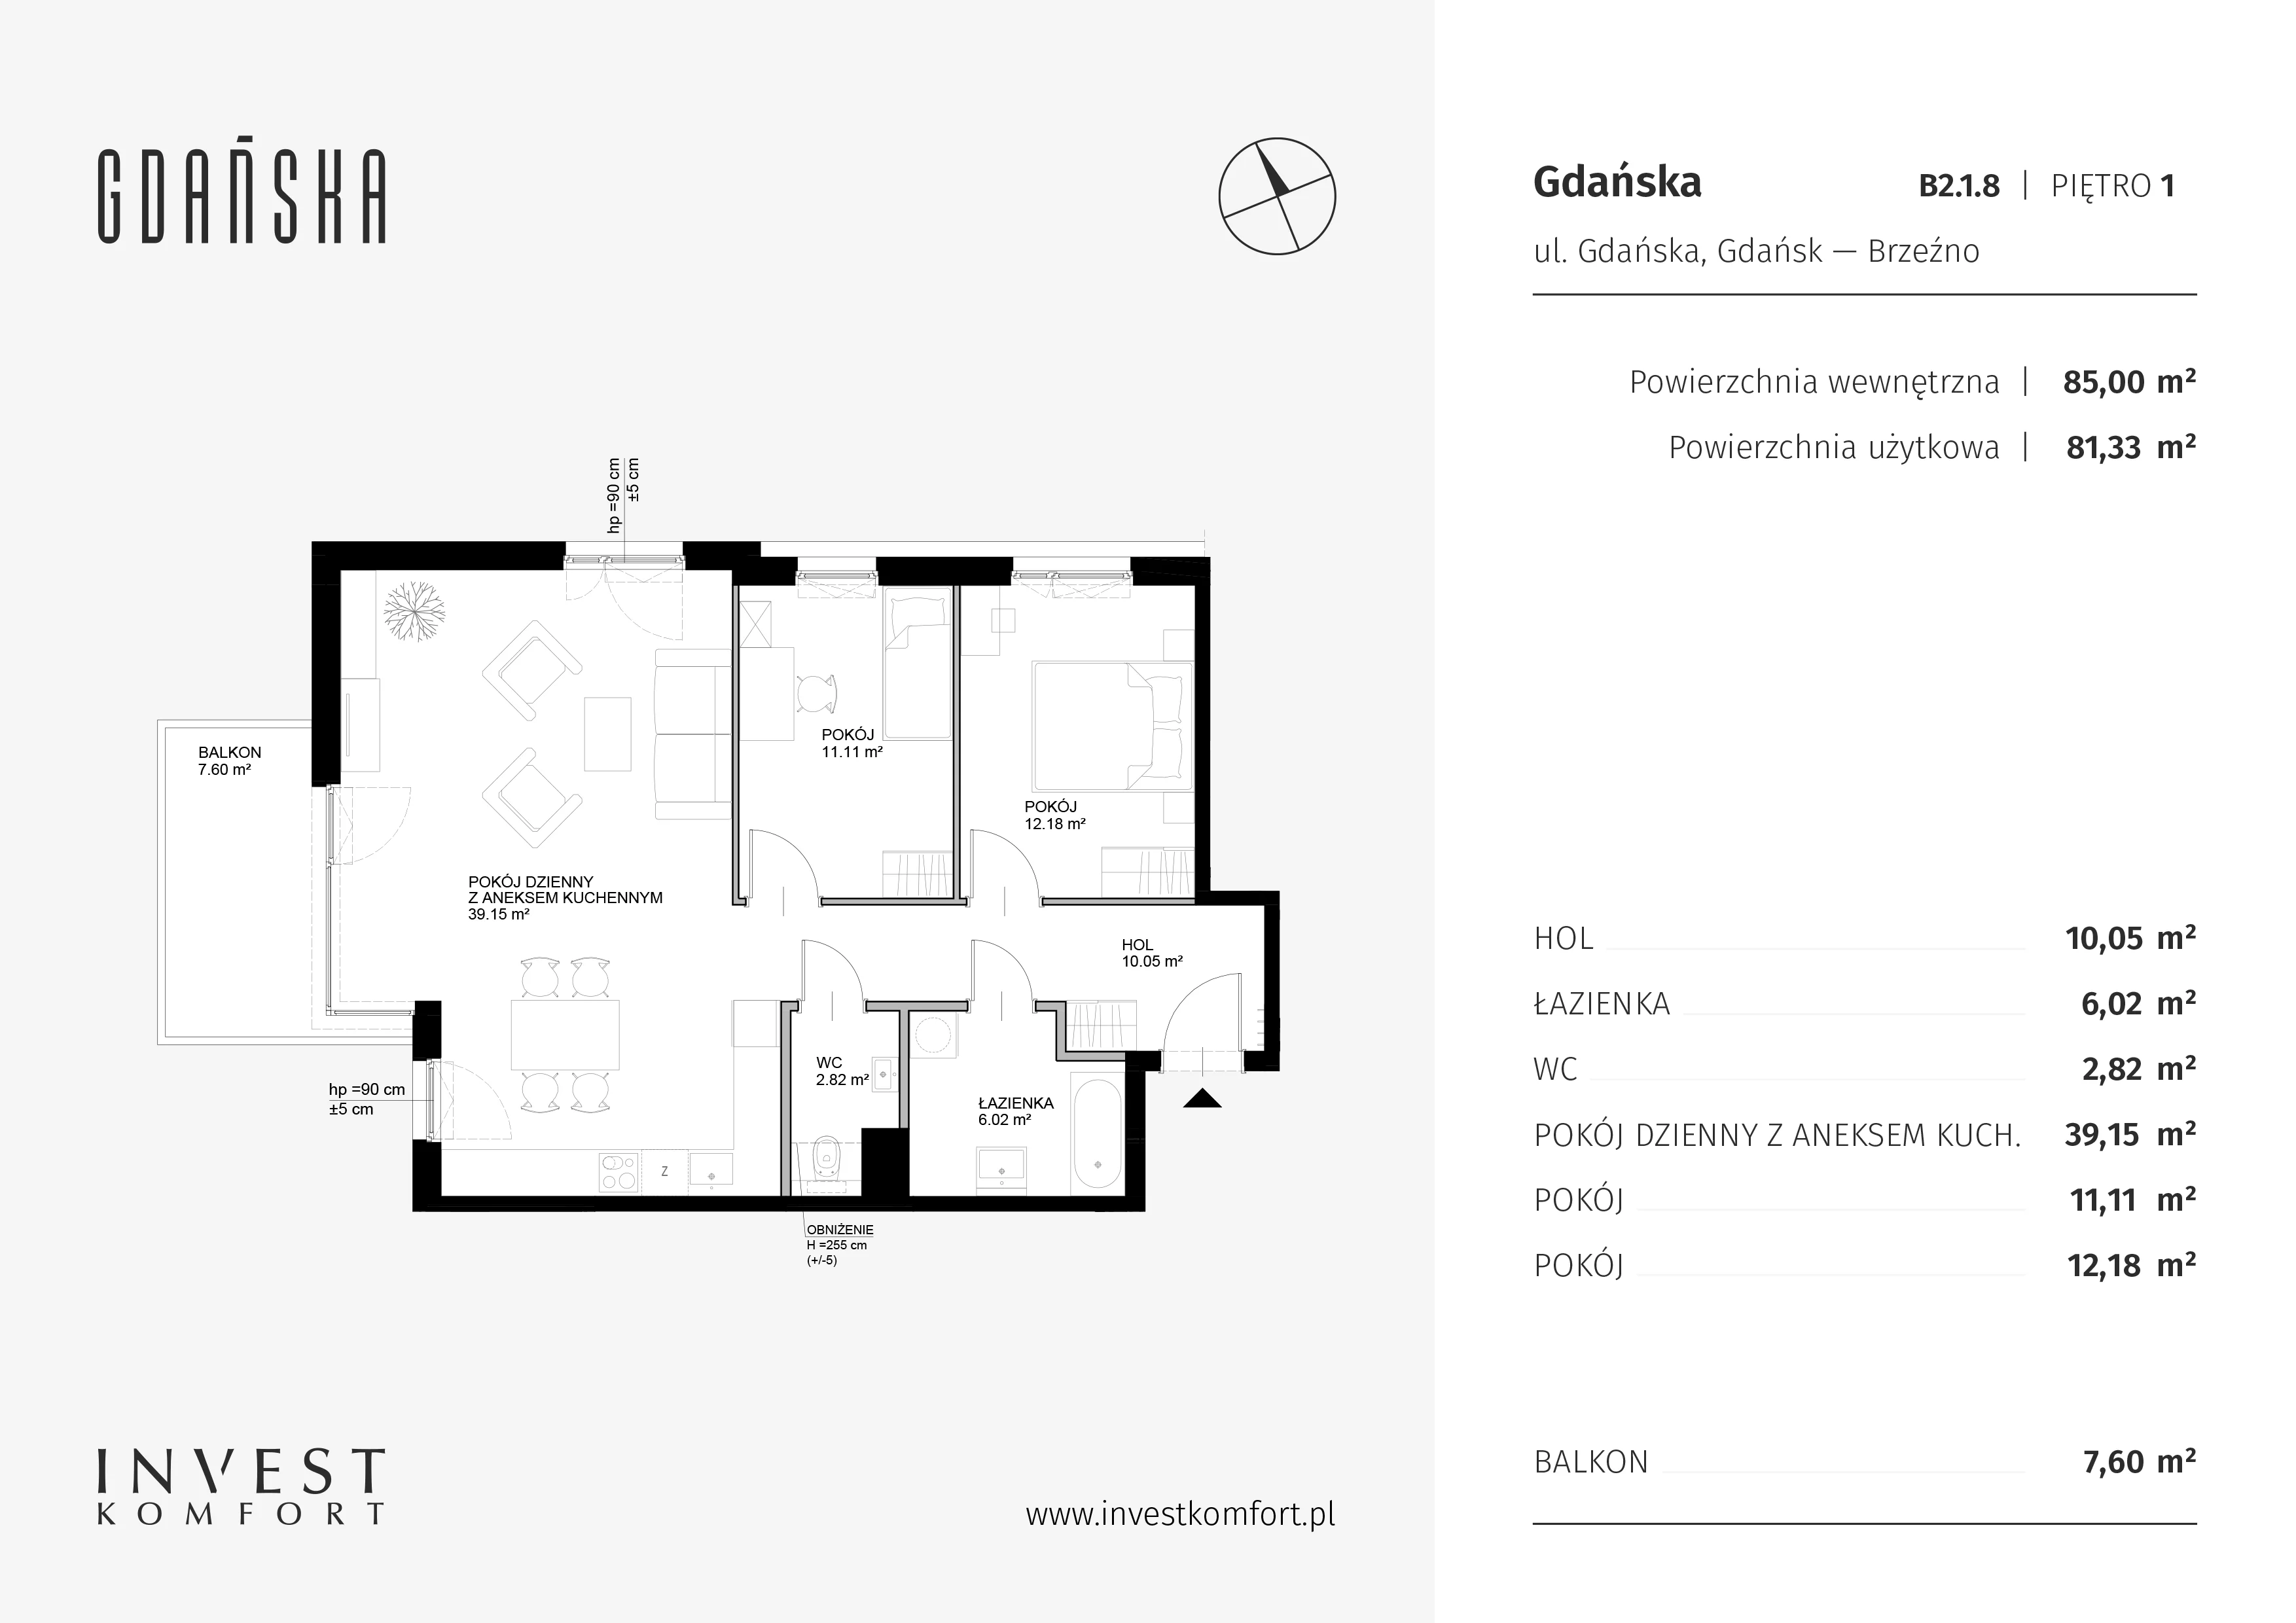 Mieszkanie 85,00 m², piętro 1, oferta nr B2.1.8, Gdańska, Gdańsk, Brzeźno, ul. Gdańska